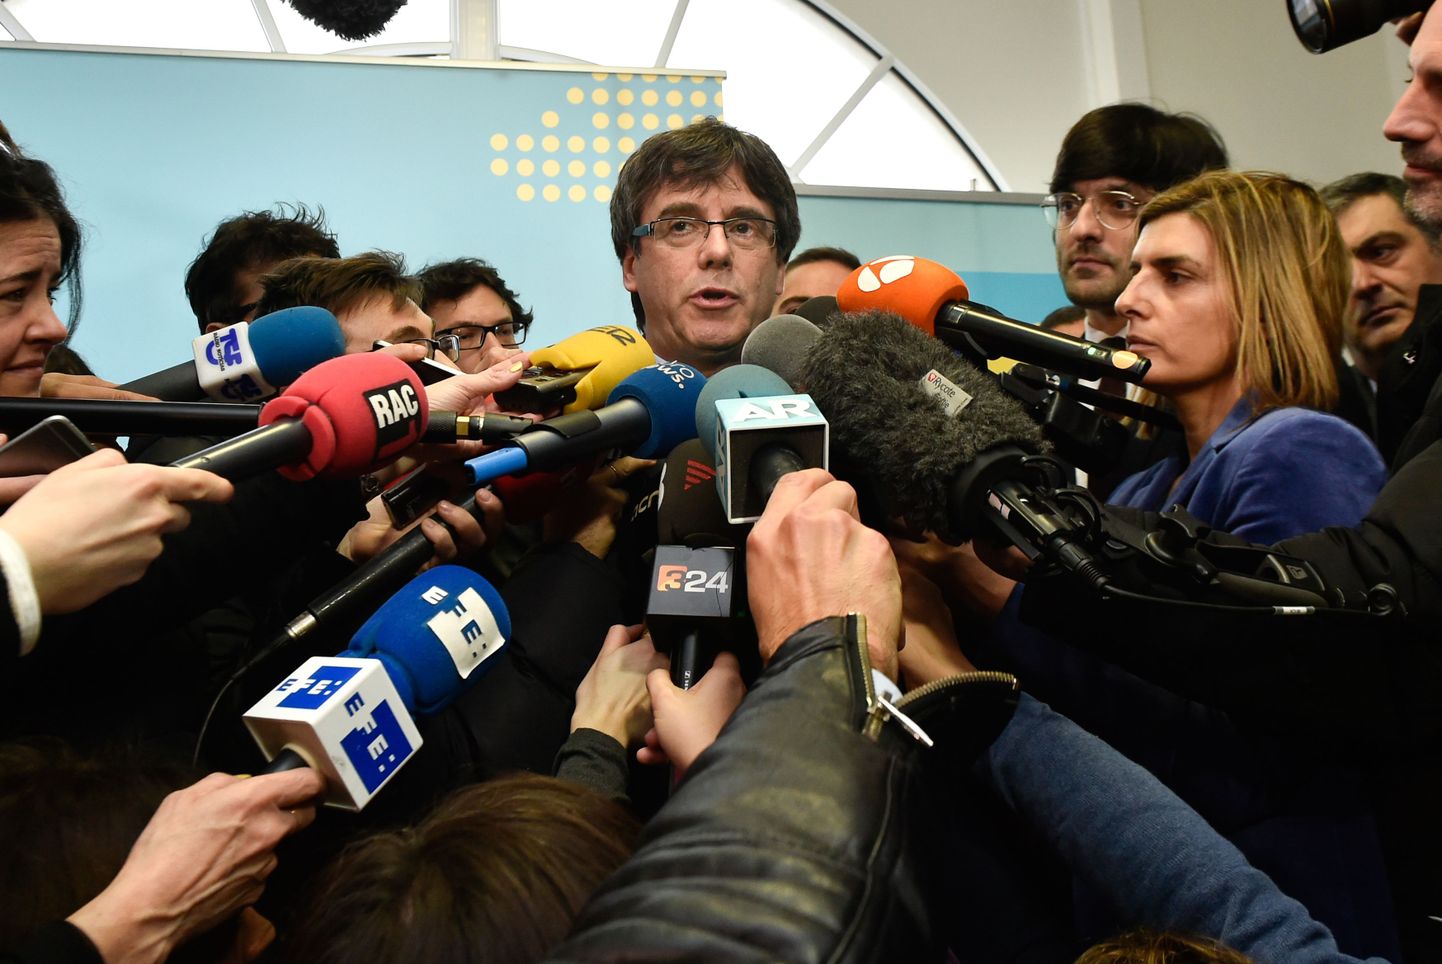 Kataloonia ekspresidendi Carles Puigdemont.